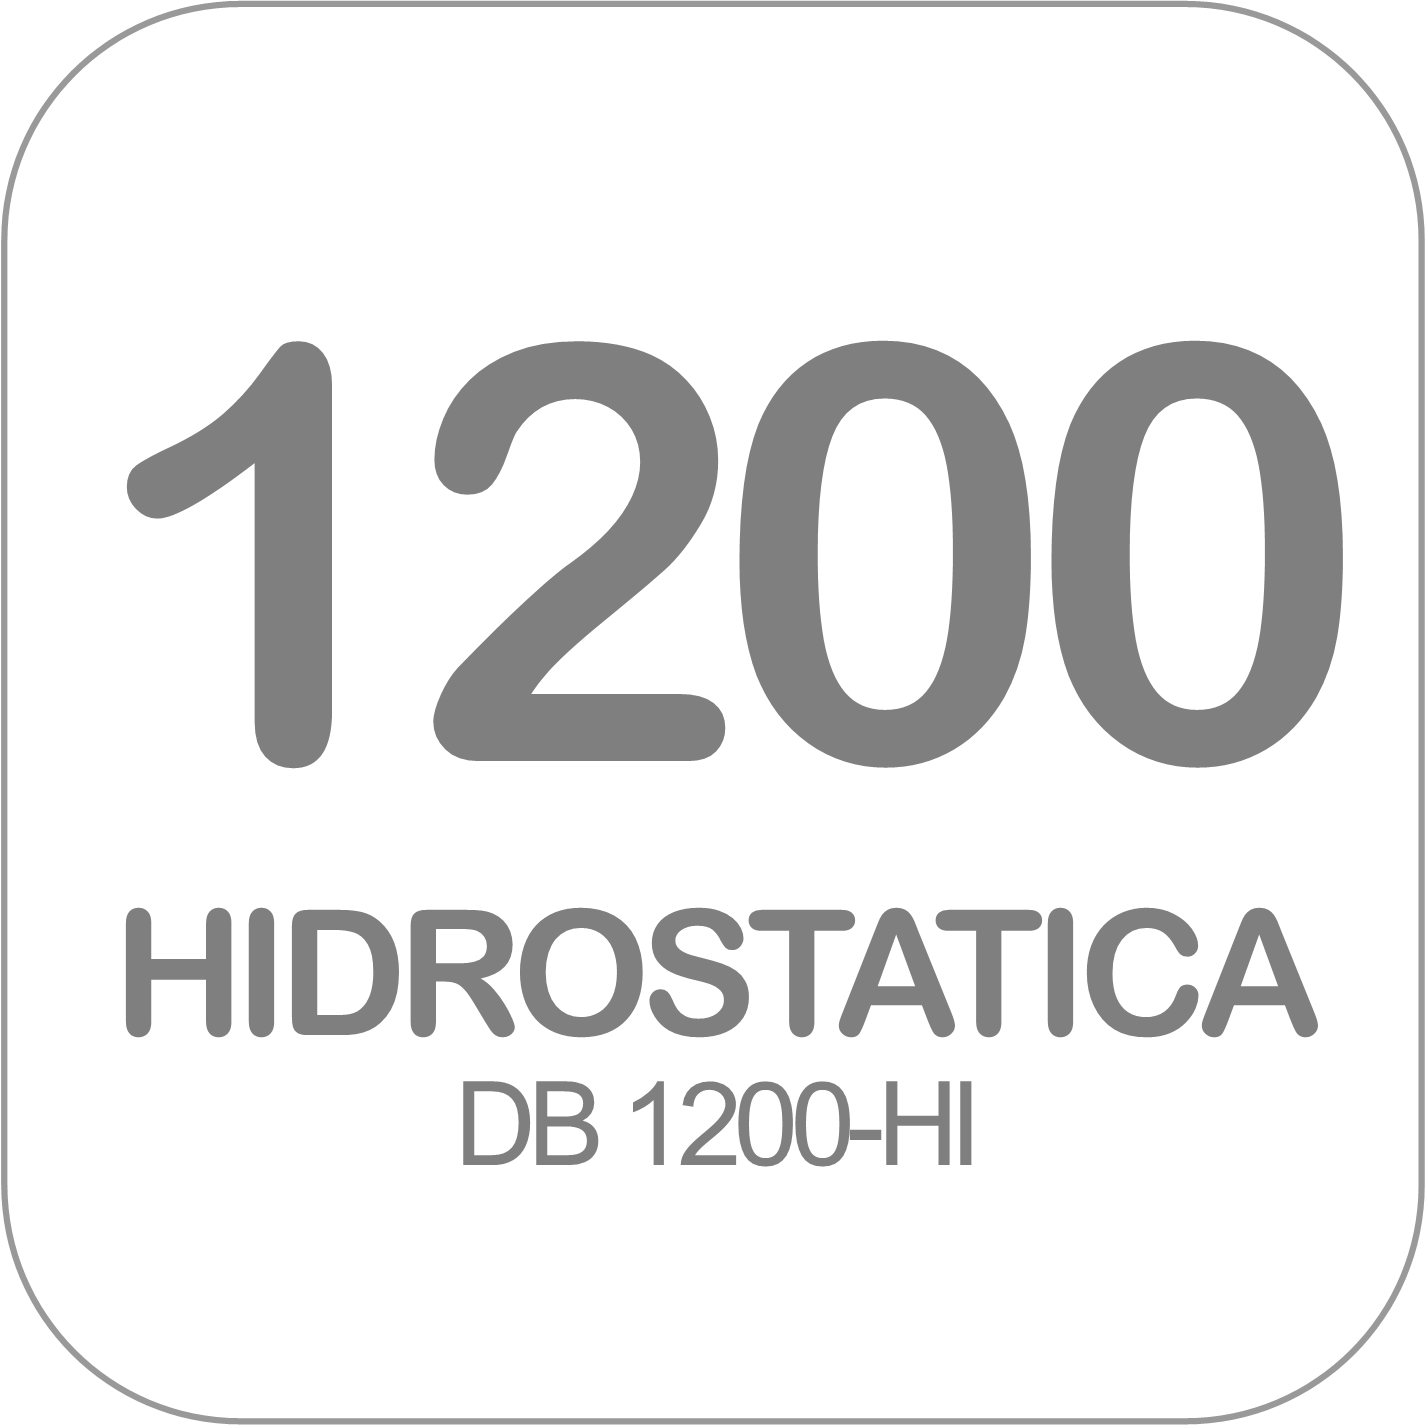 Autohormigonera DB 1200-HI